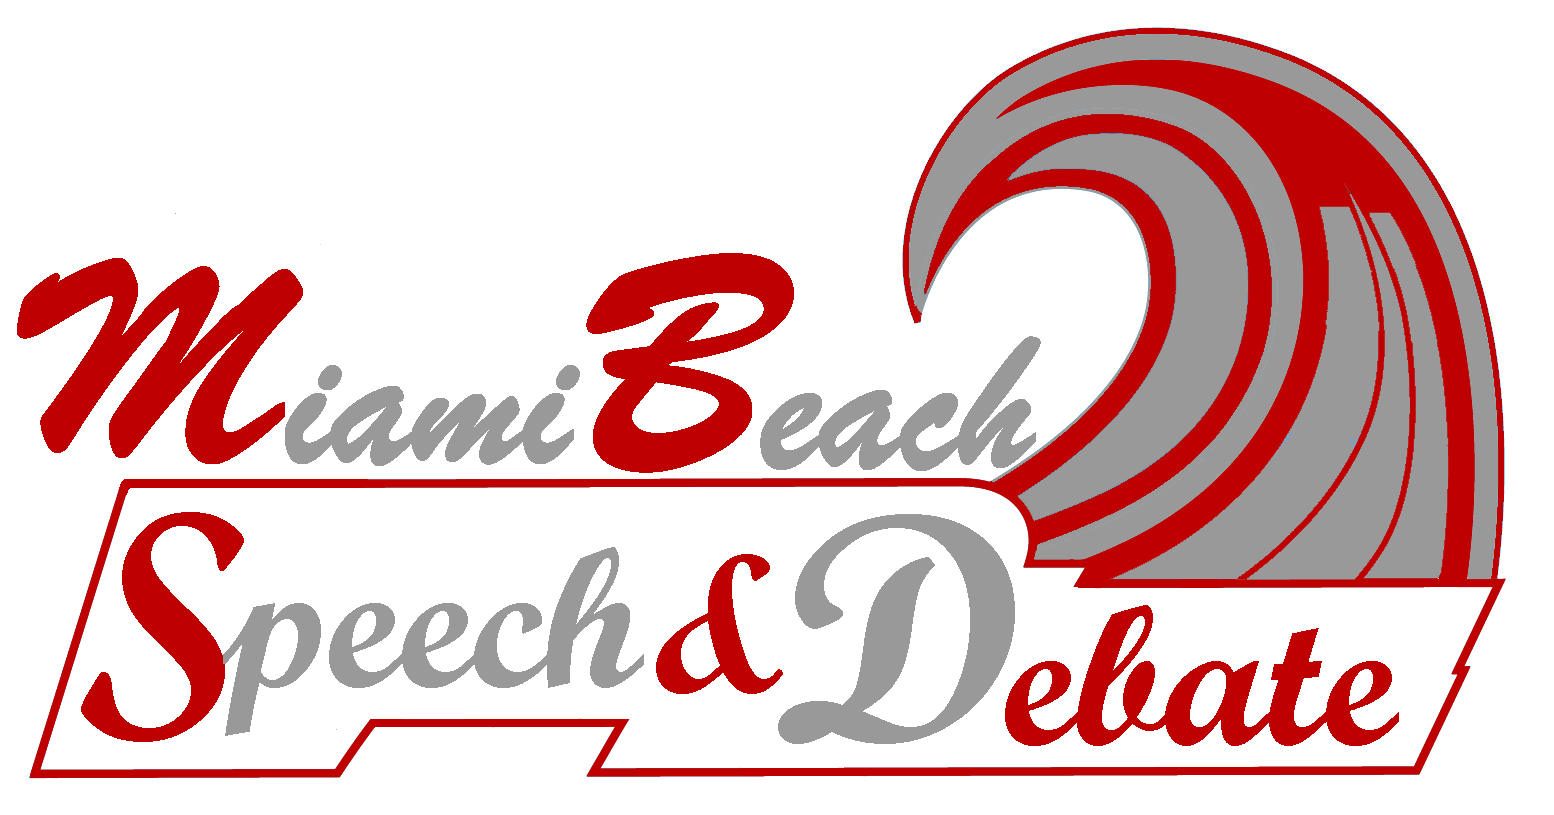 Speech and Debate team logo